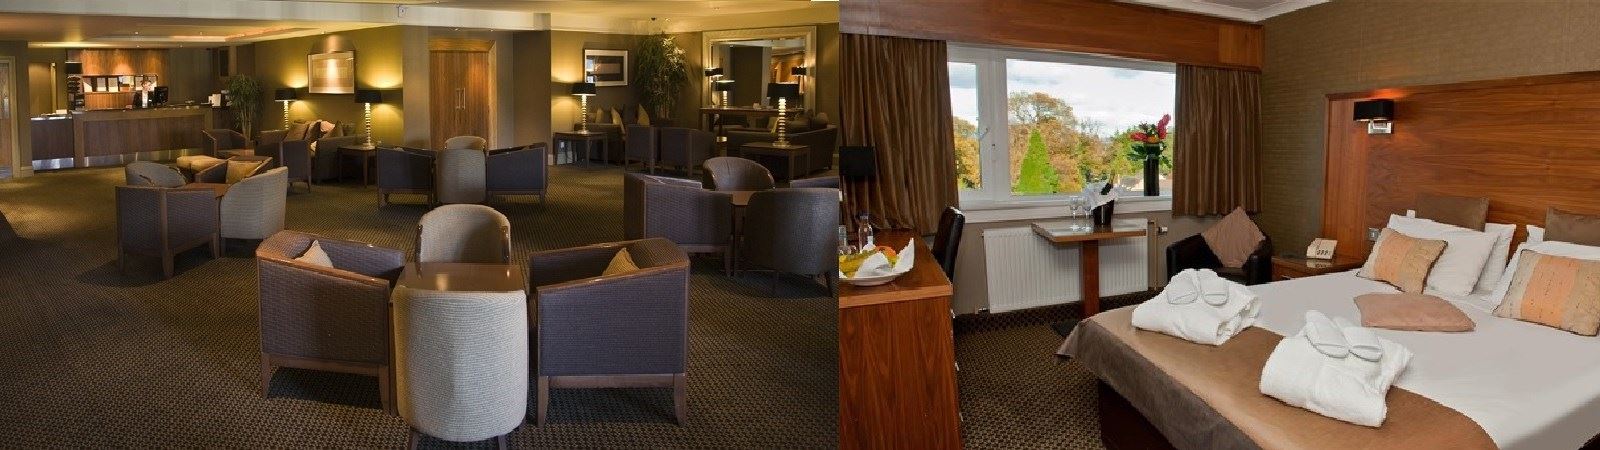 Best Western Park Hotel, Falkirk|Hotels in Falkirk